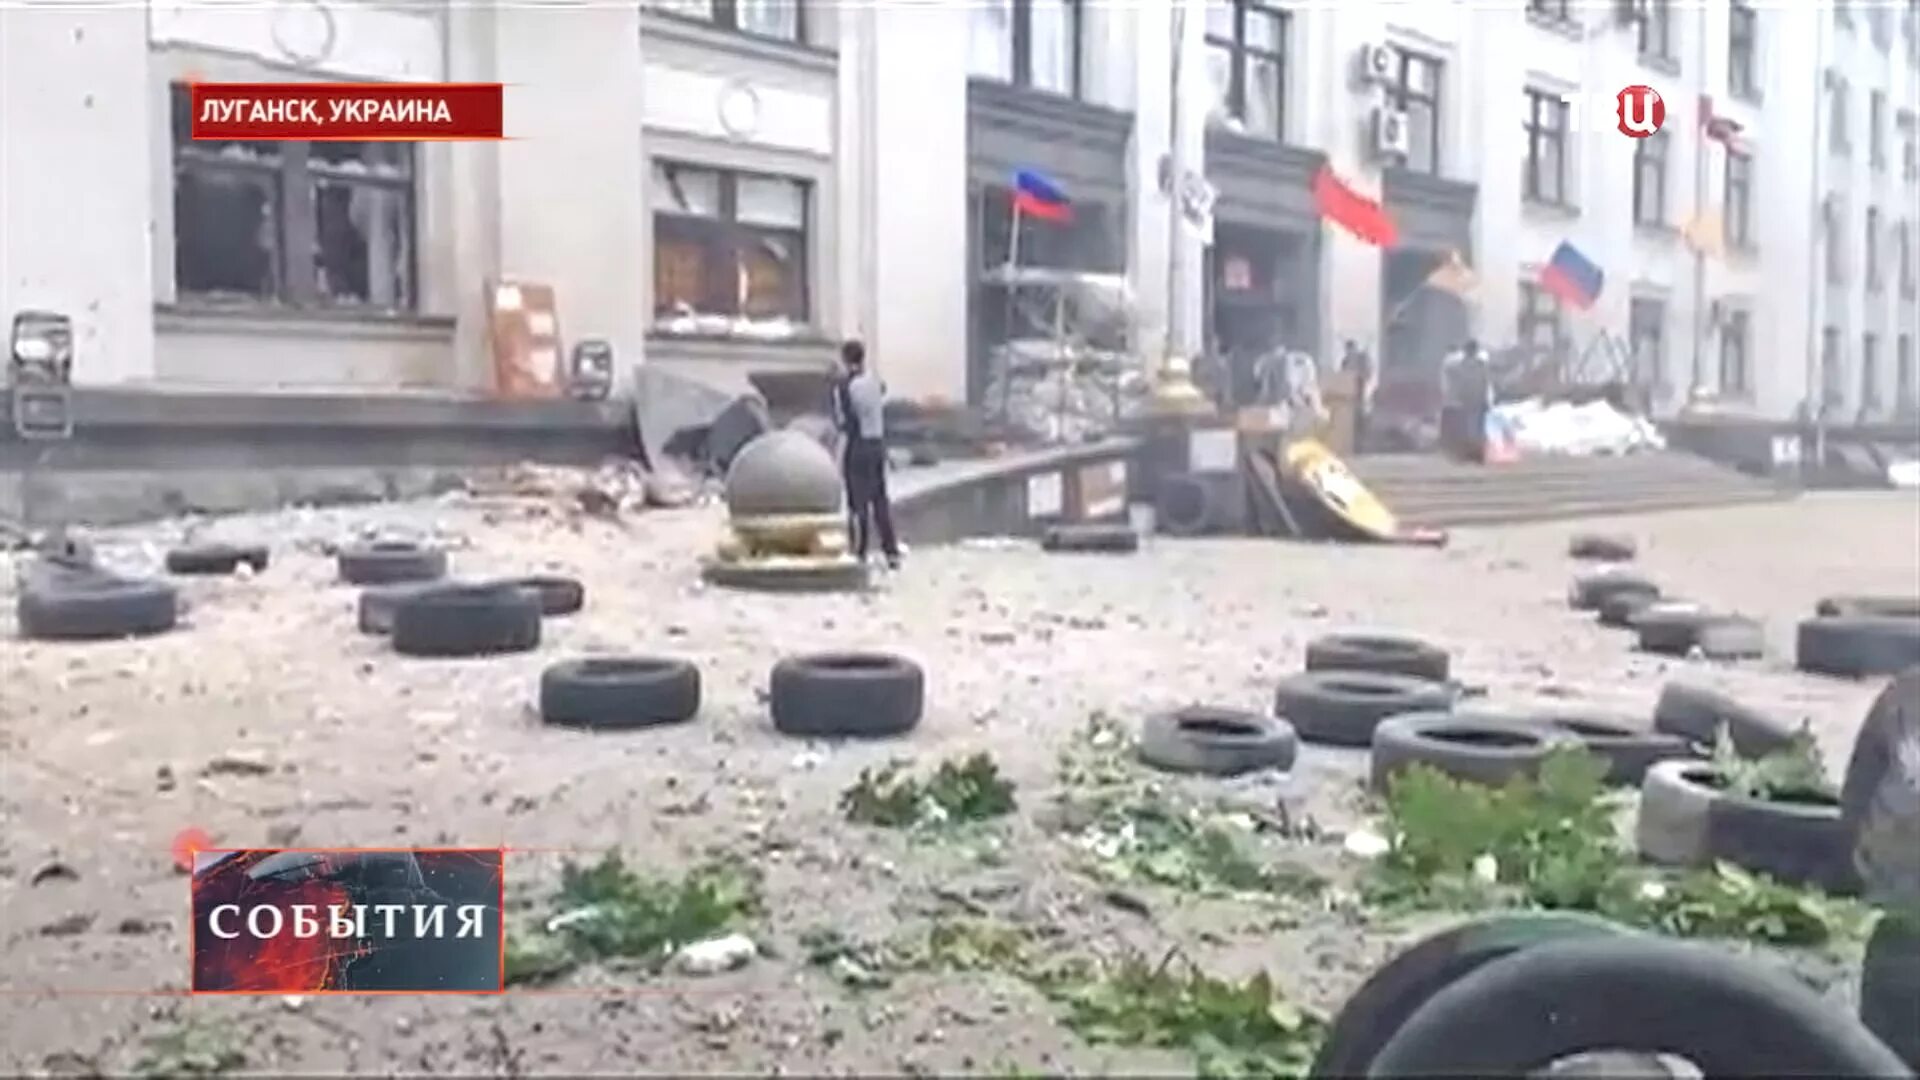 Обстрел администрации Луганск июнь 2014. Обстрел Луганска 2 июня 2014. От 23 июня 2014 г